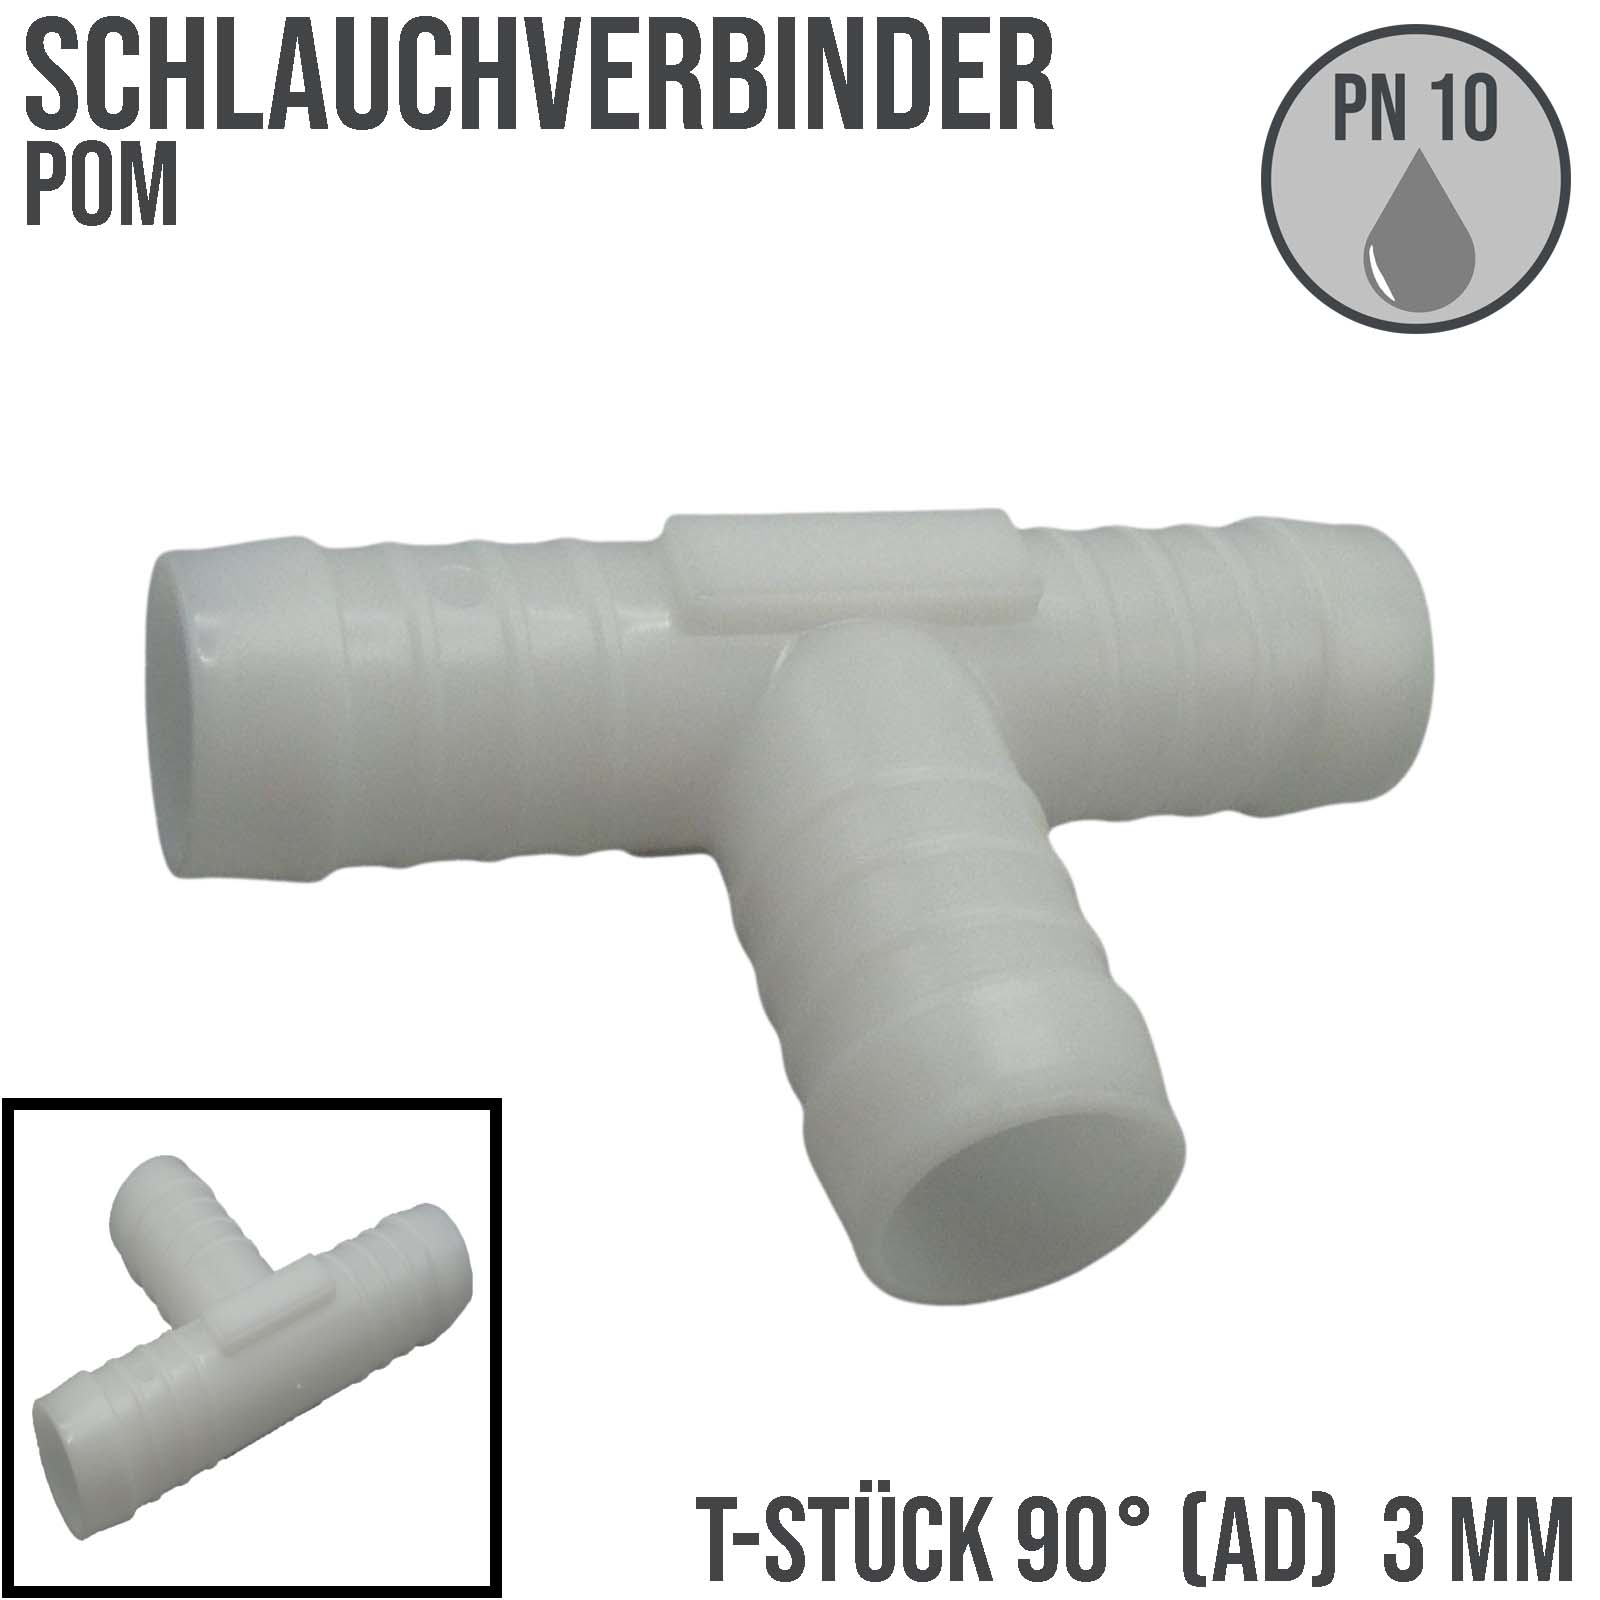 POM Schlauchverbinder - 3 mm - Verschiedenste Ausführungen stehen zur  Auswahl.